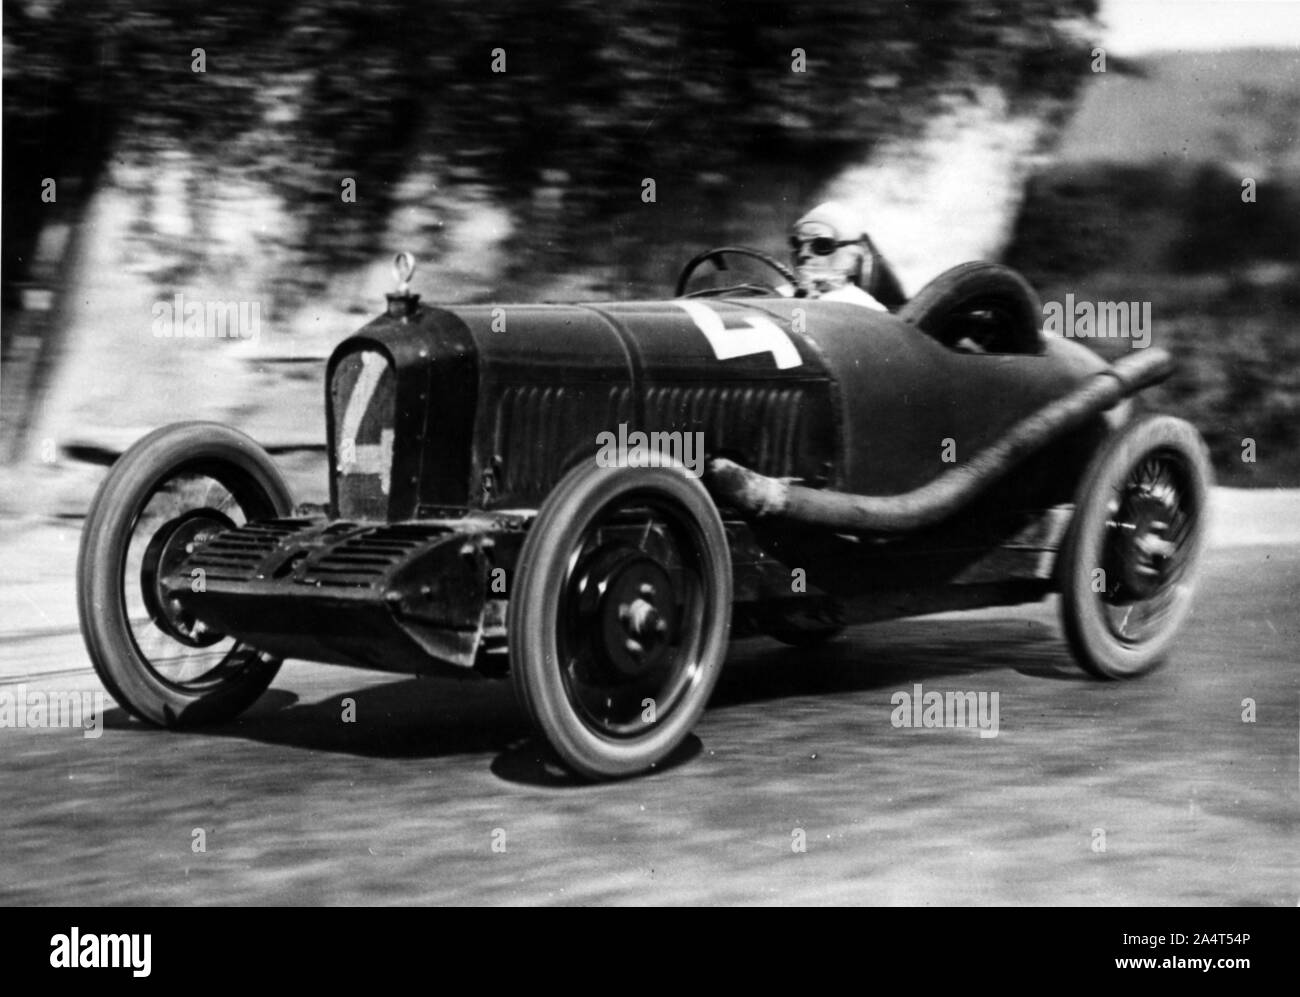 1925 Soriano Pedroso driven by Graf. Stock Photo